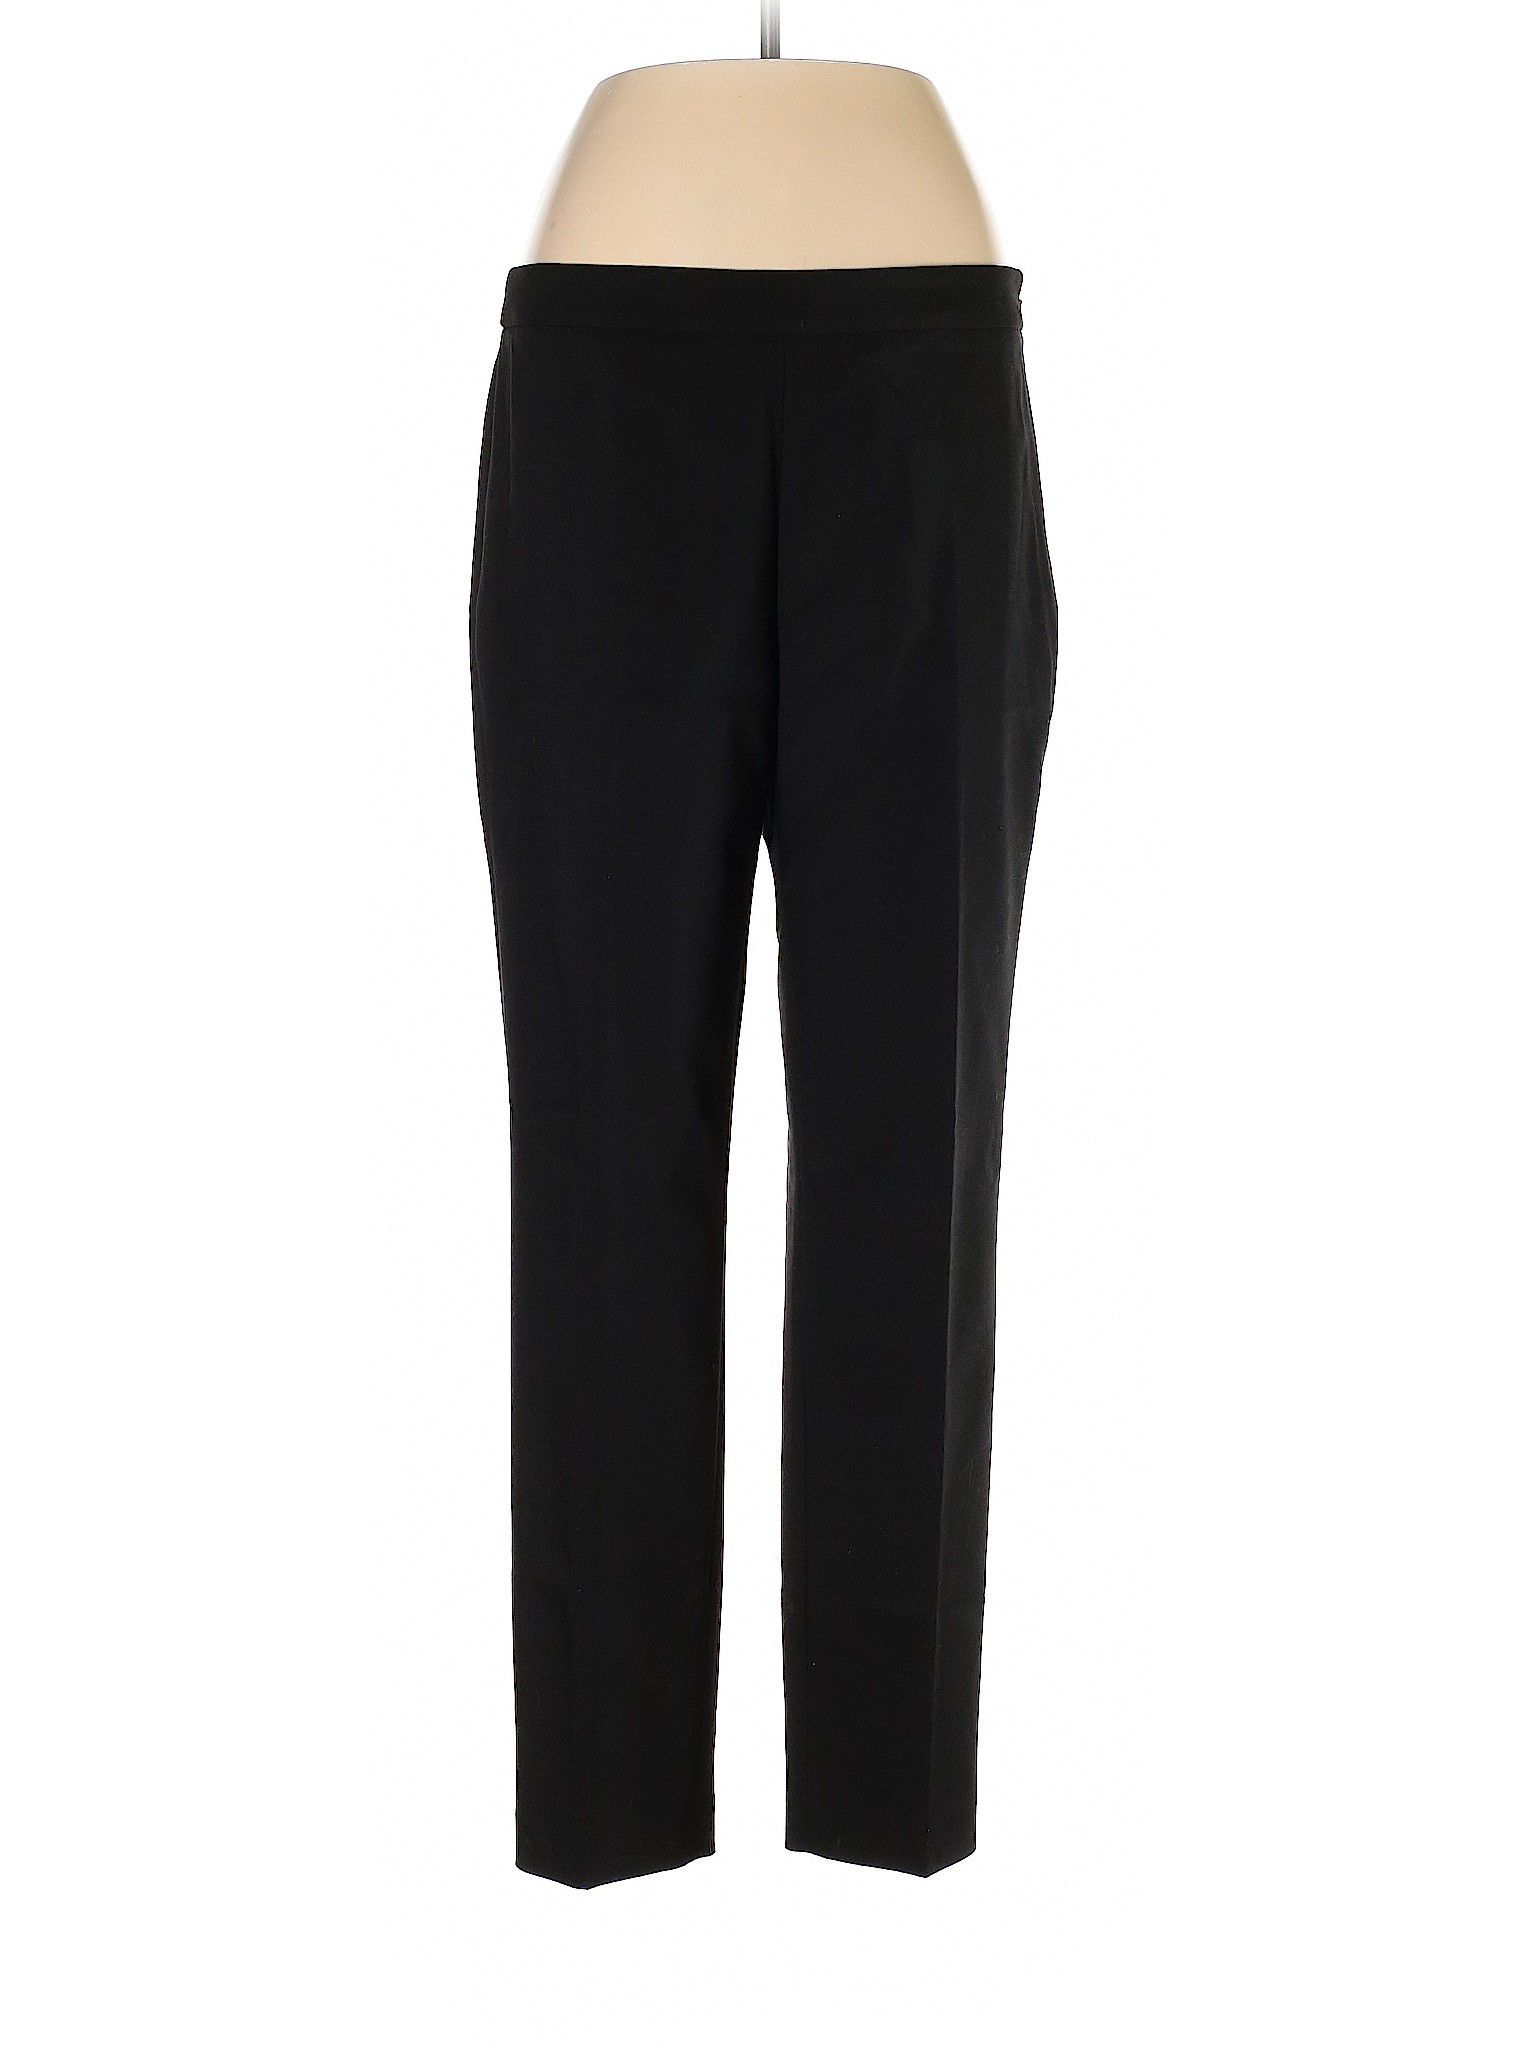 Chaus Women Black Dress Pants 10 | eBay